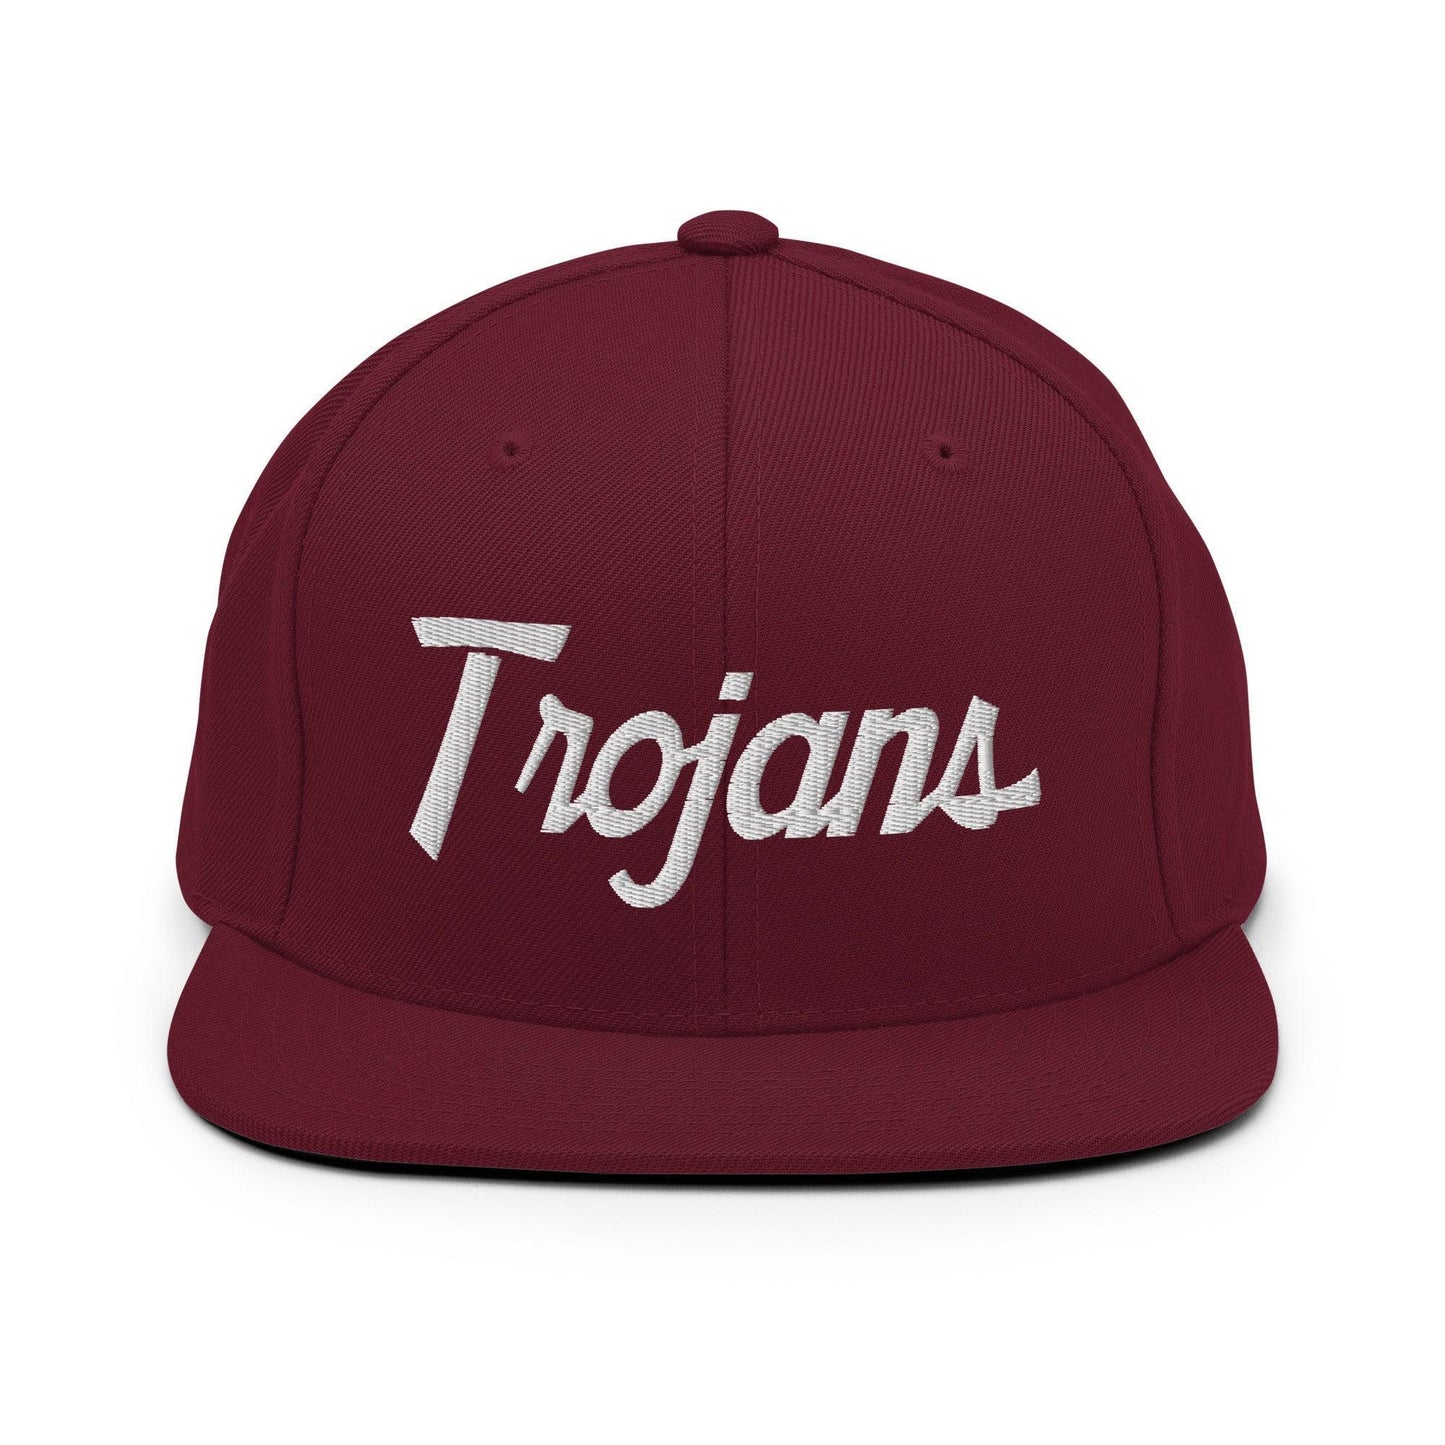 Trojans School Mascot Script Snapback Hat Maroon